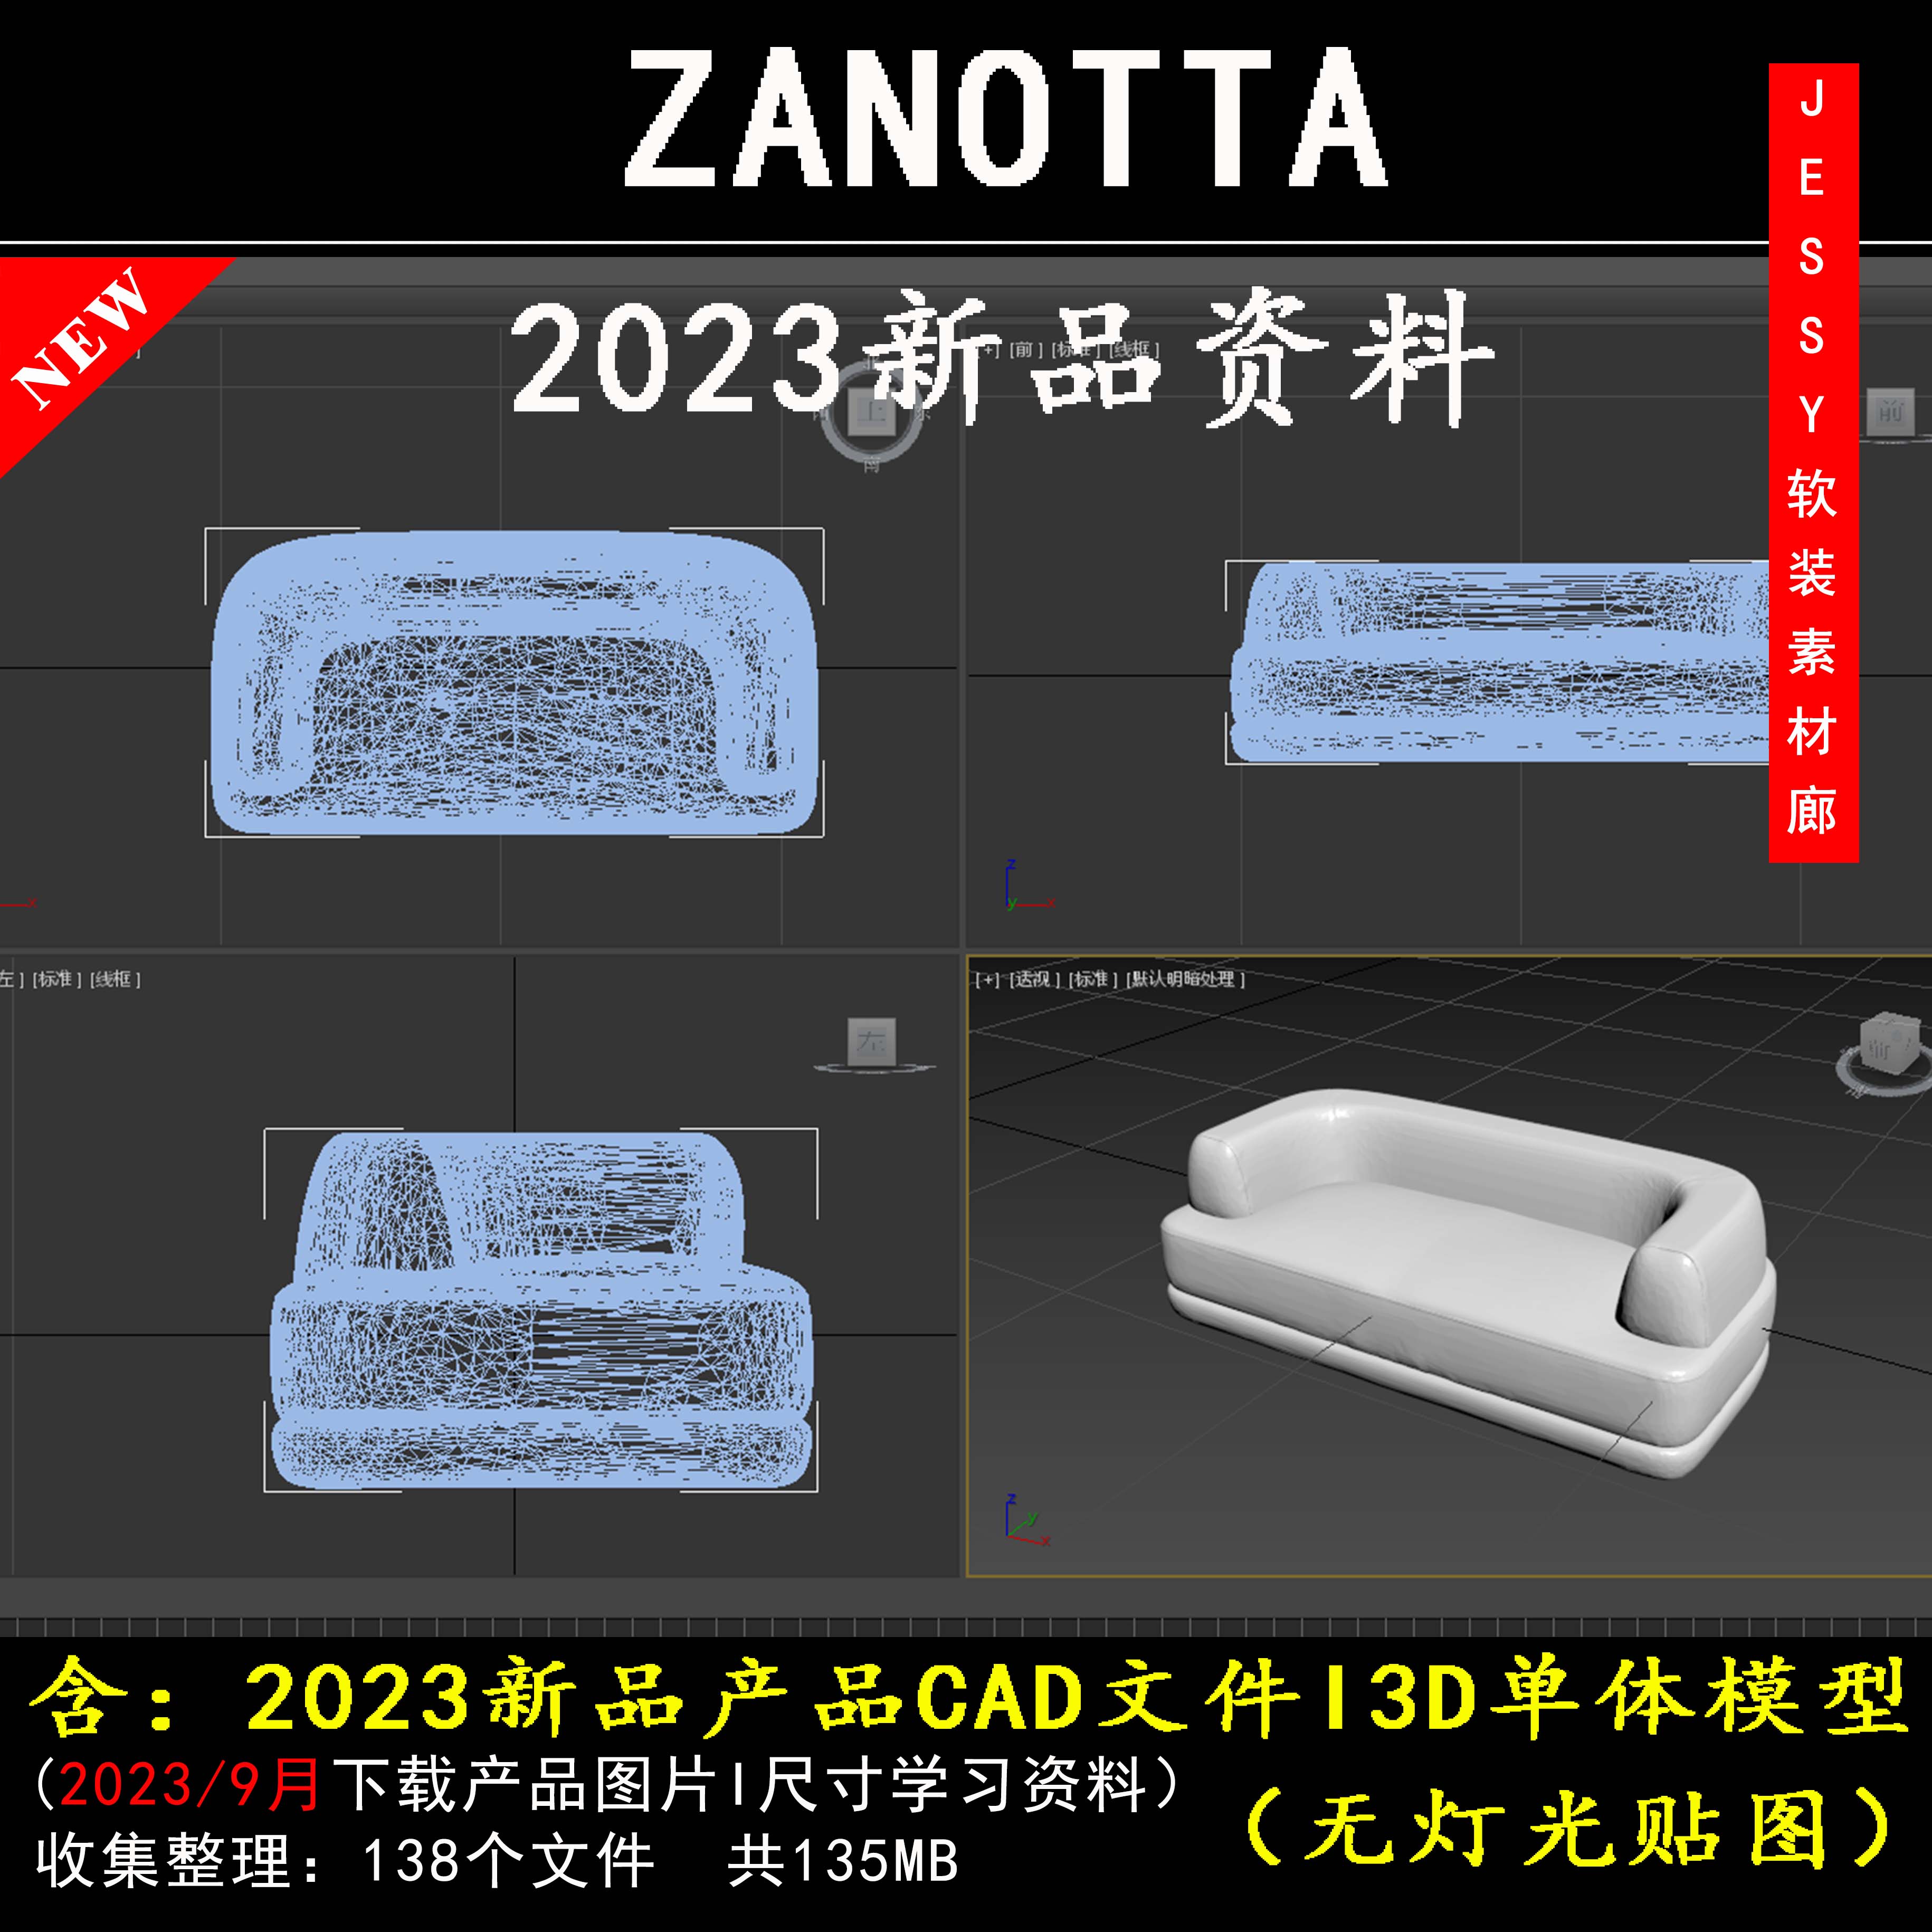 意大利Zanotta2023新品资料CADI3D模型图片尺寸品牌家具软装素材